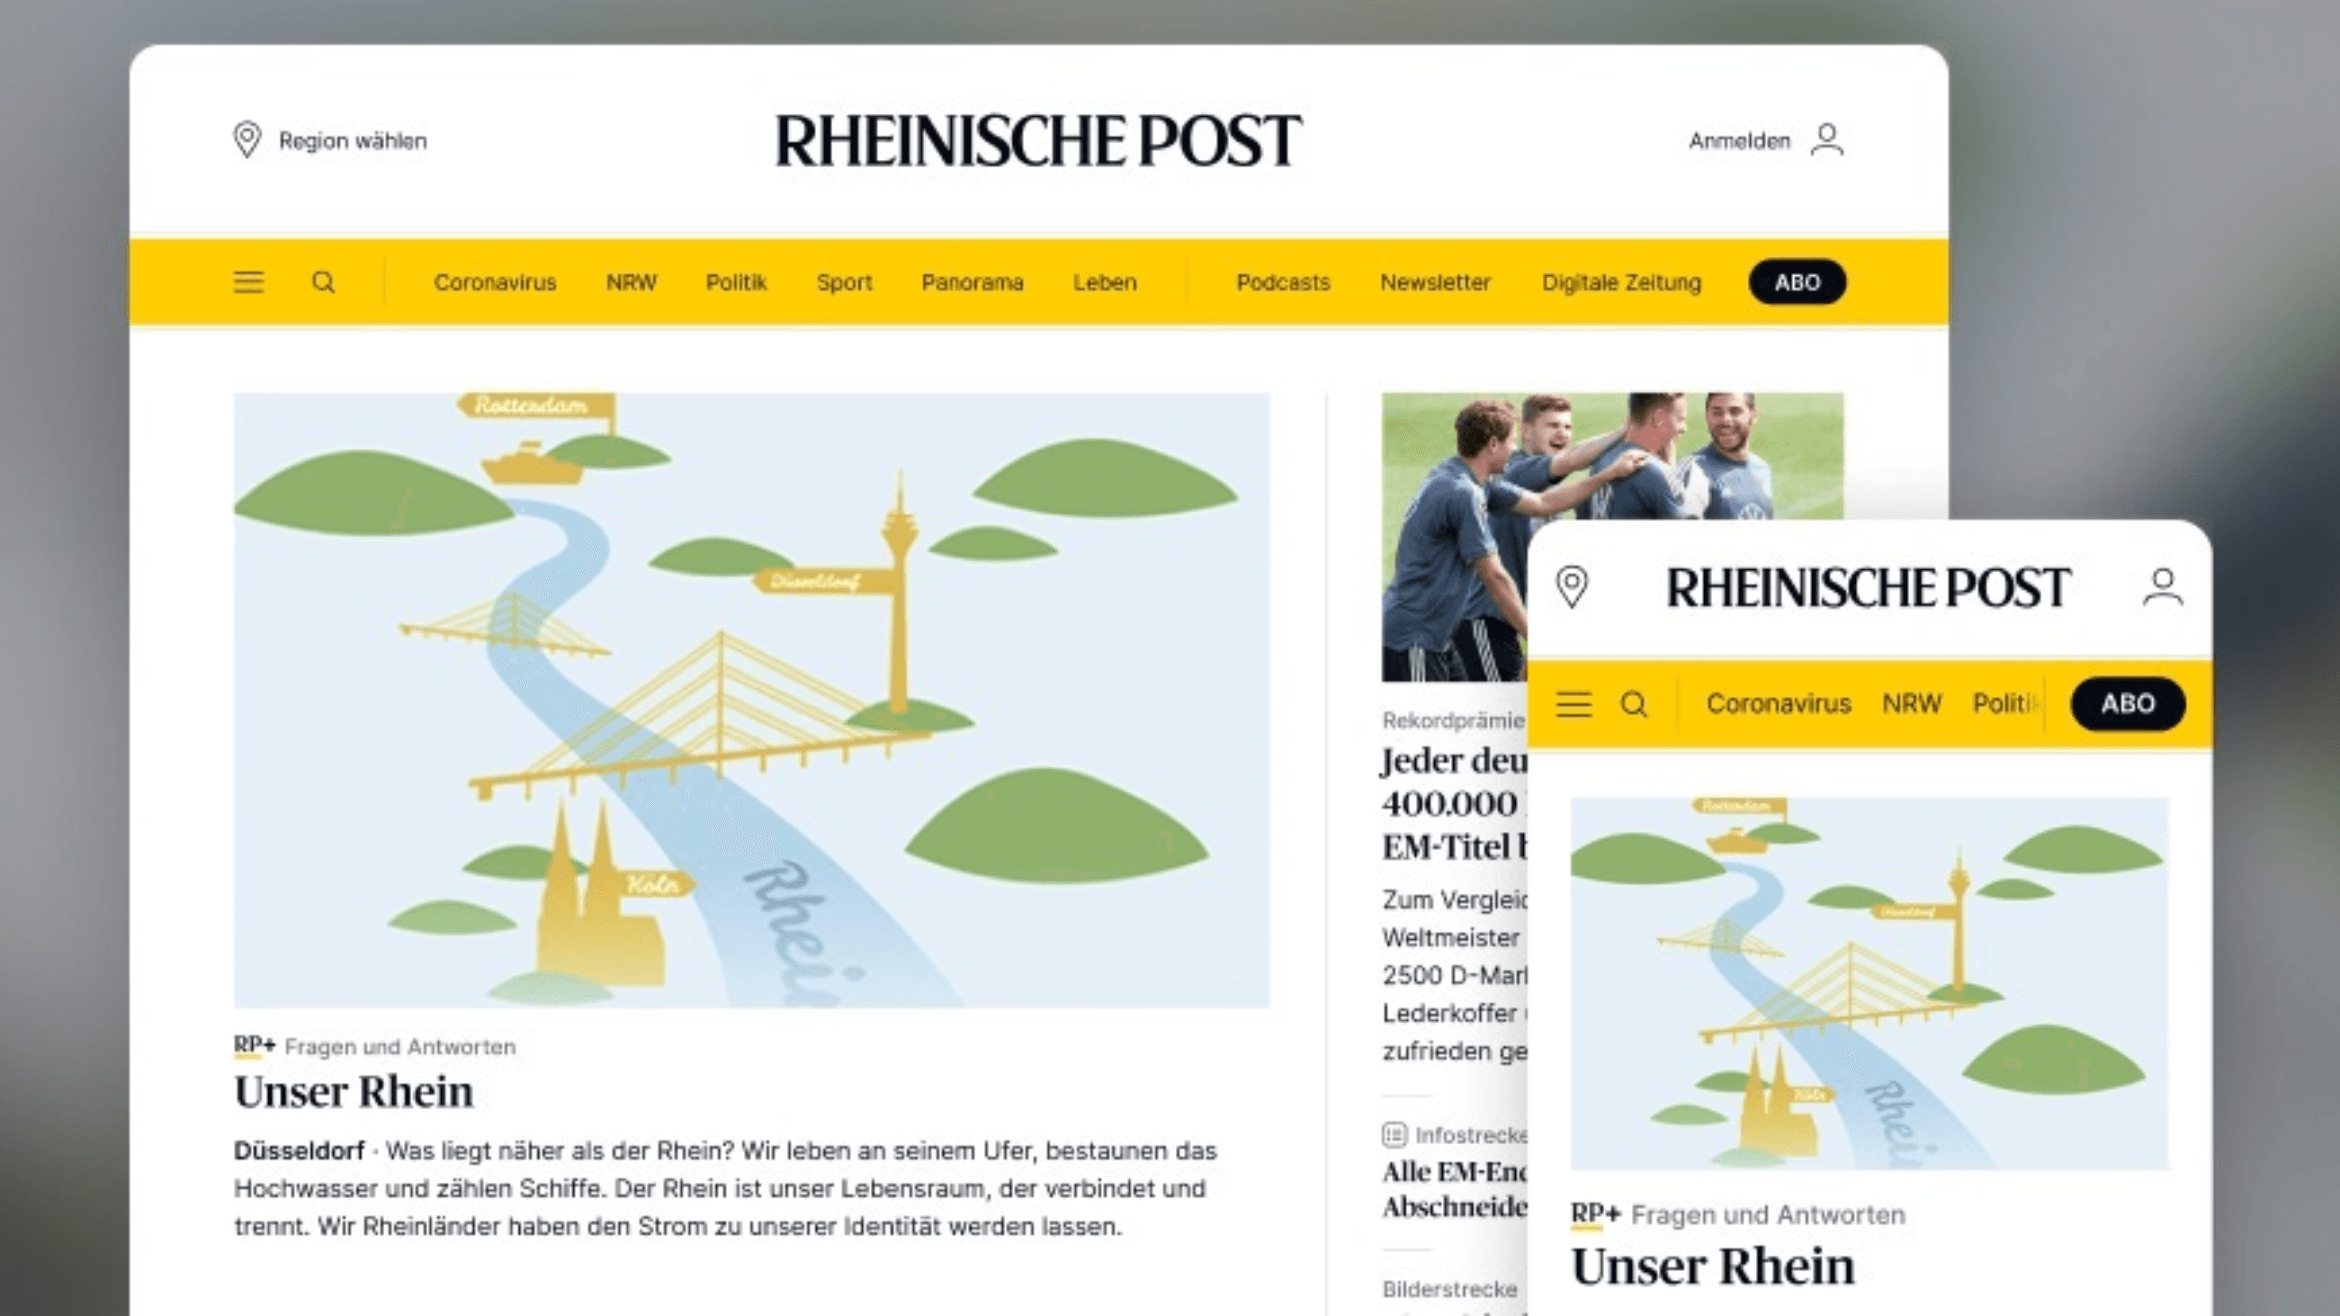 Der Online-Auftritt der "Rheinischen Post" -